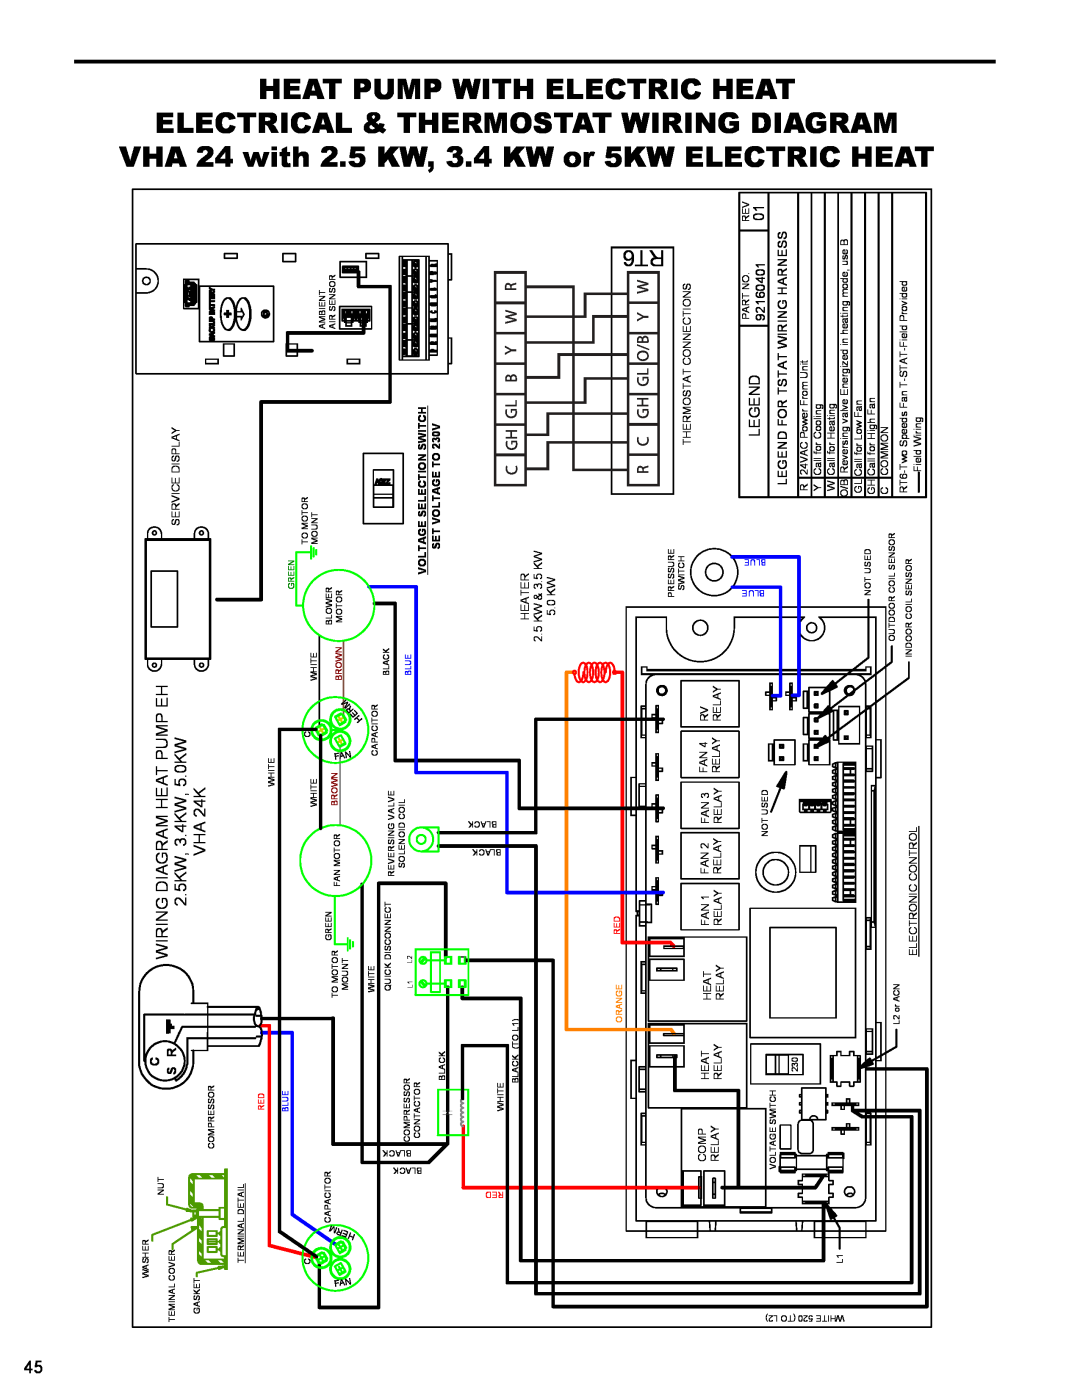 Friedrich R410A manual Wiring Diagram Heat Pump Eh, 2.5KW, 3.4KW, 5.0KW, VHA 24K, 92160401, Legend For Tstat Wiring Harness 